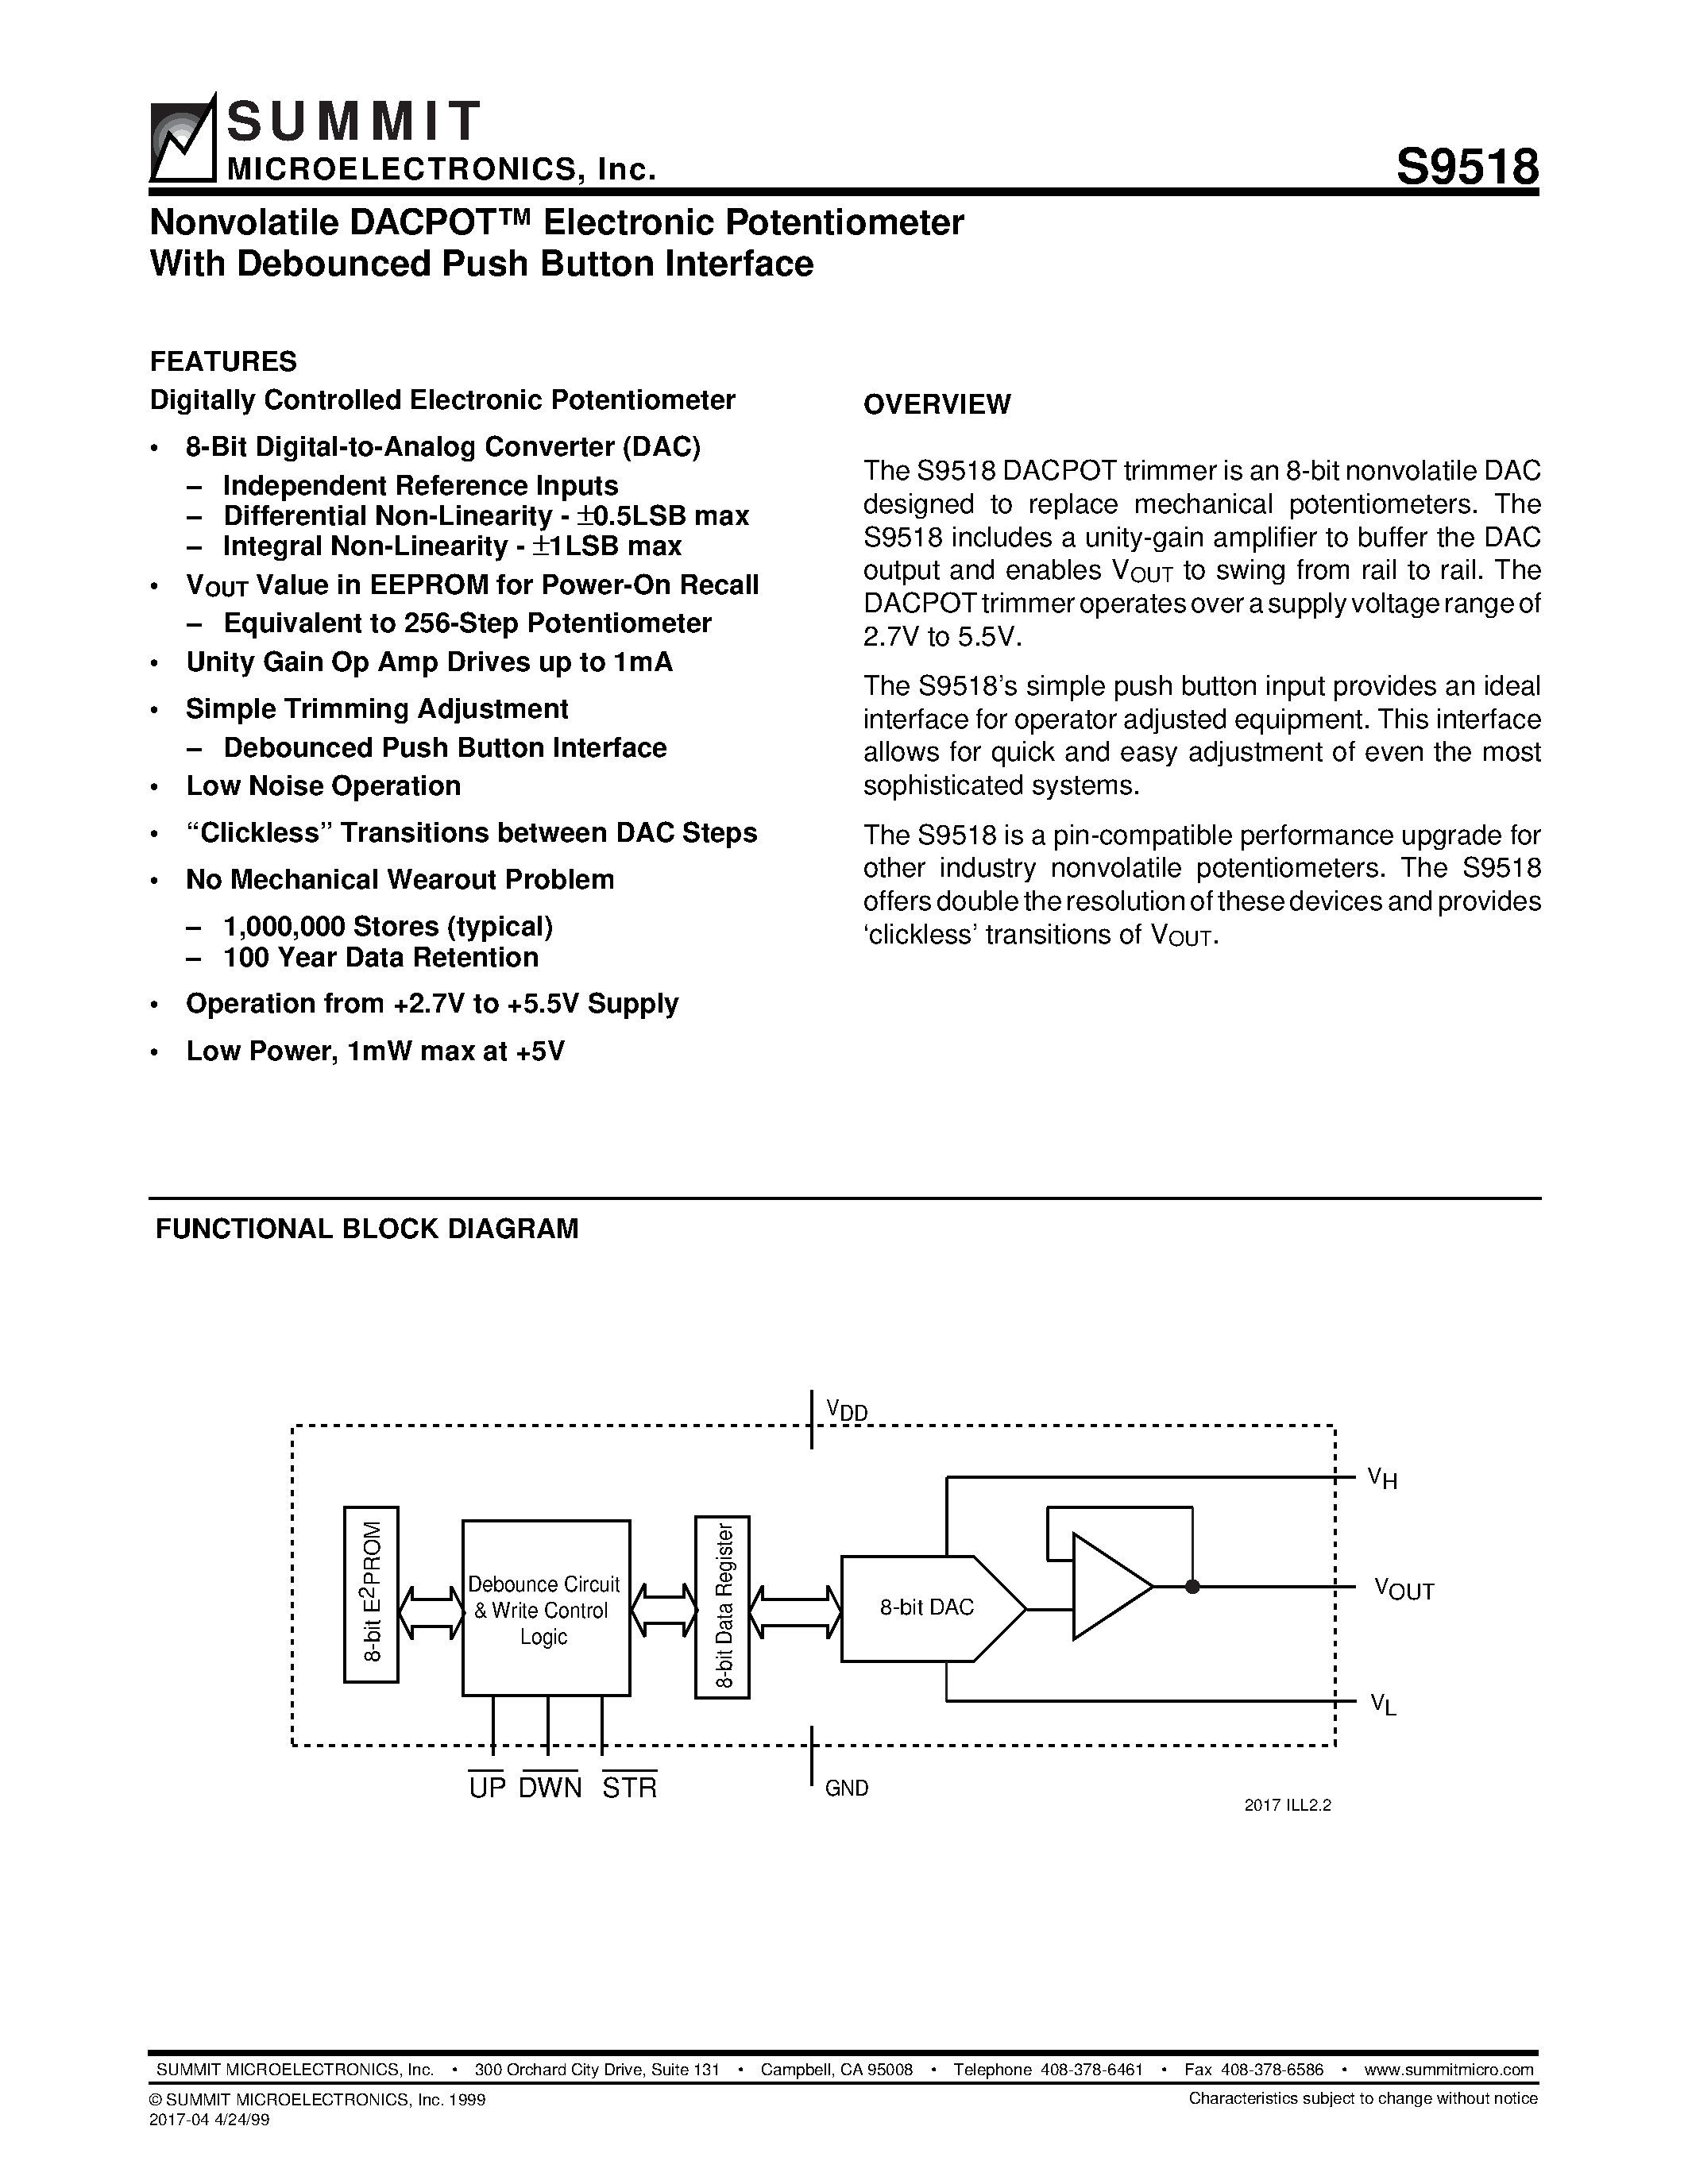 Даташит S9518 - Nonvolatile DACPOT Electronic Potentiometer With Debounced Push Button Interface страница 1